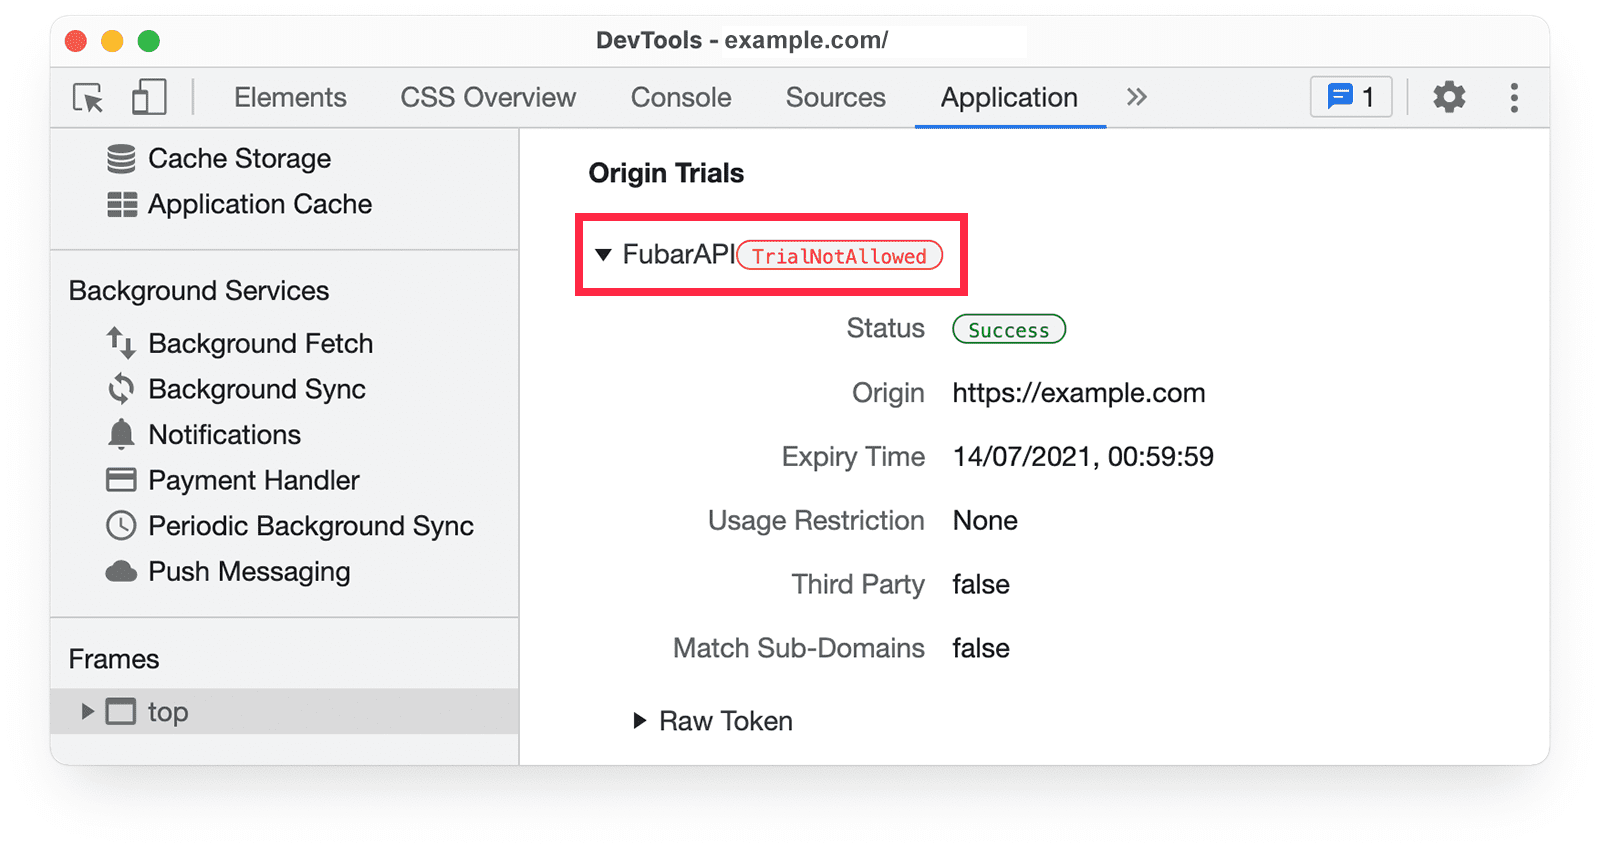 Informações sobre os testes de origem do Chrome DevTools no painel &quot;Application&quot; mostrando o aviso TrialNotAllowed.